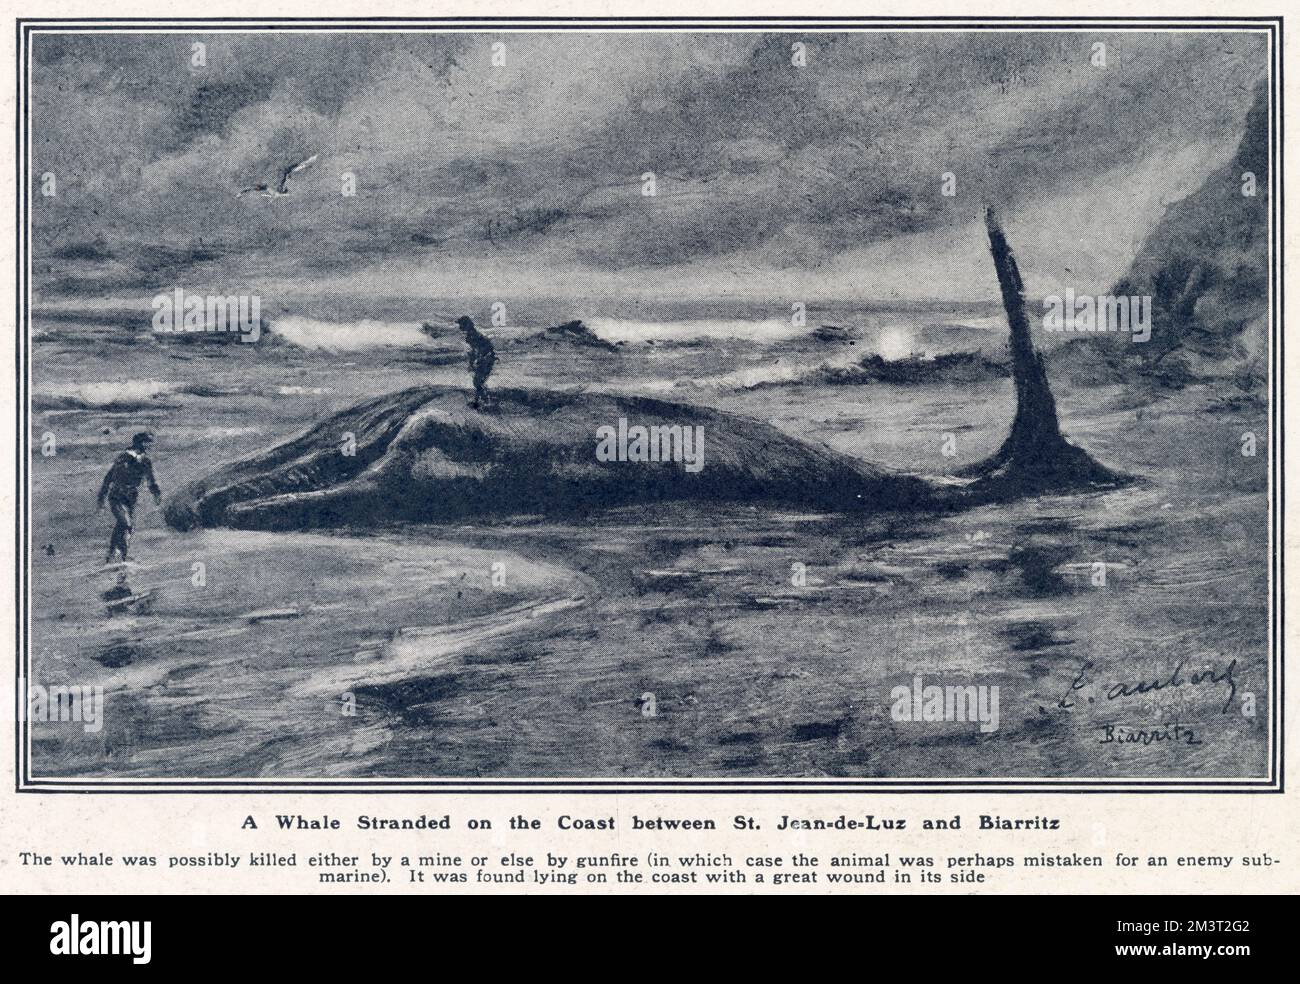 L'immense corps d'une baleine échouée sur la côte entre St. Jean-de-Luz et Biarritz, France. Trouvé avec une grande blessure sur son côté, indiquant la mort par une mine ou peut-être un feu de combat naval (peut-être confondu avec un sous-marin ennemi). Banque D'Images